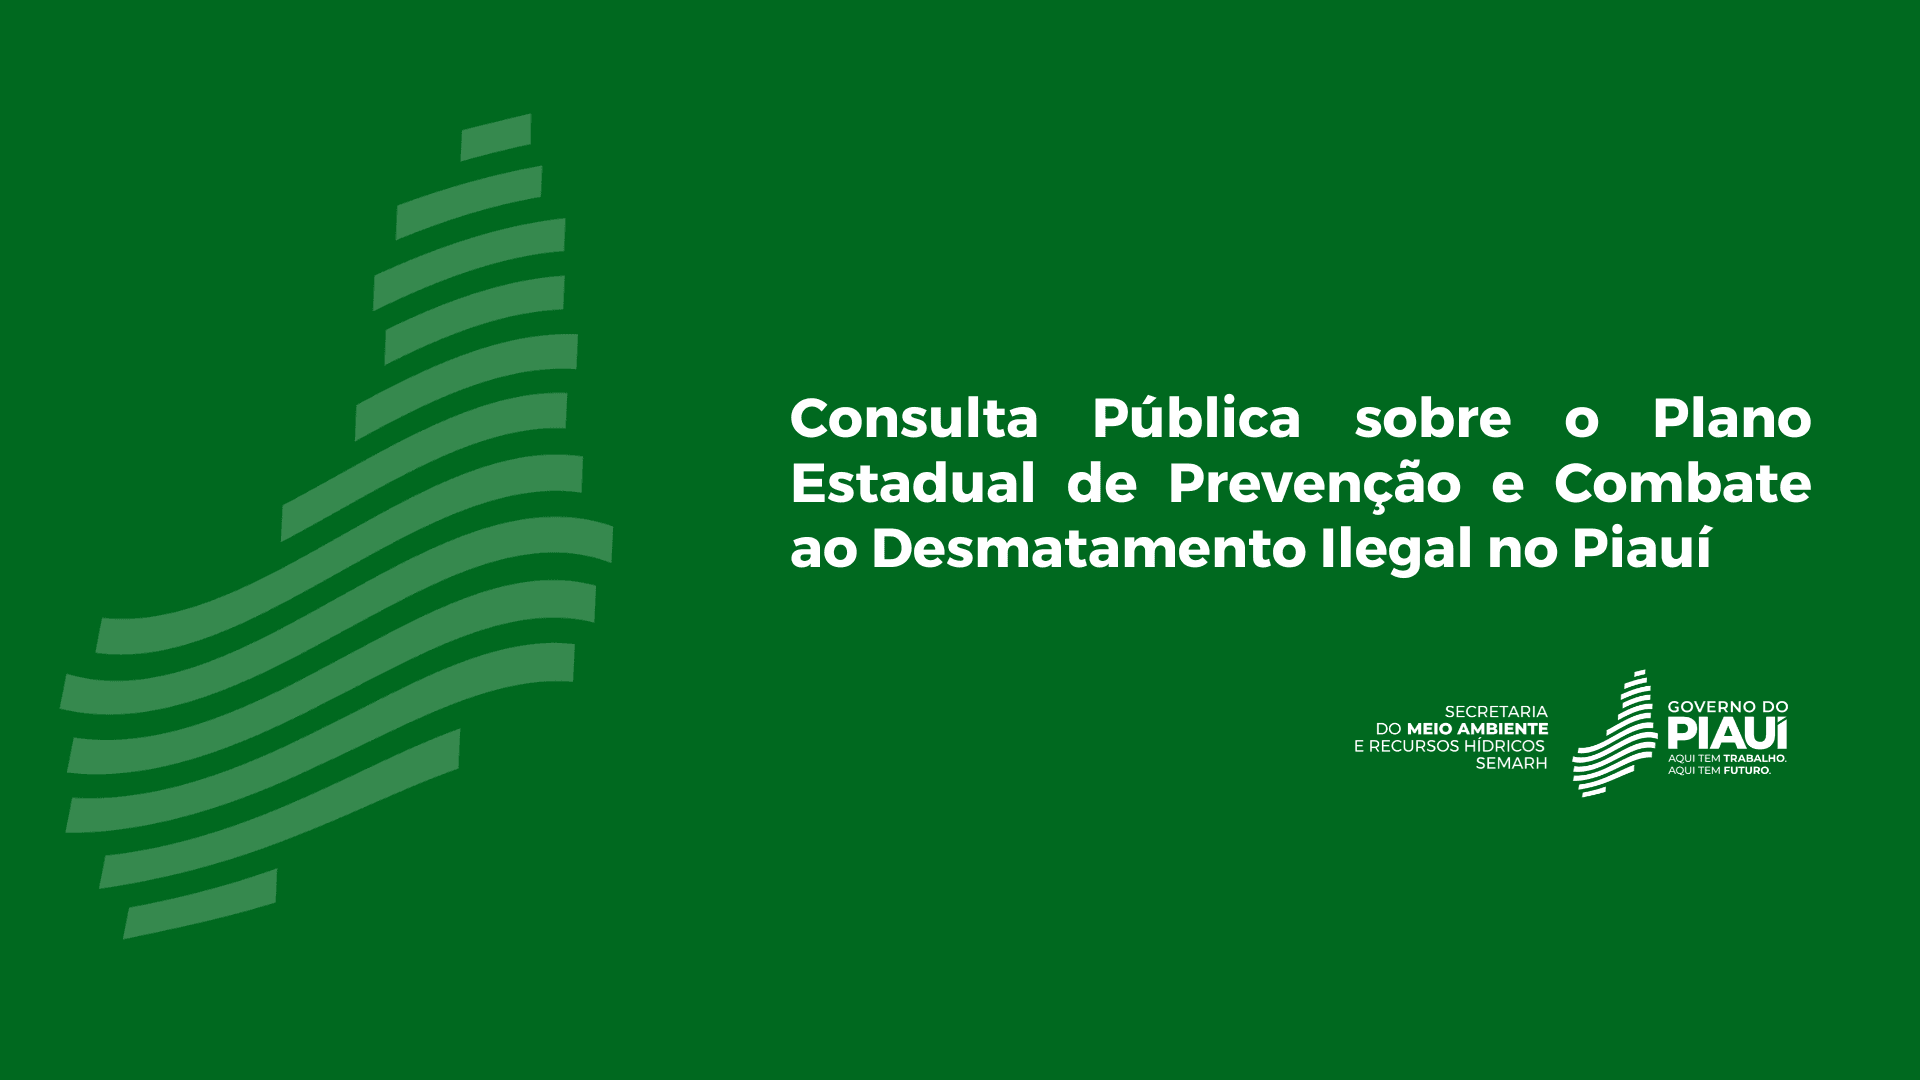 Consulta Pública sobre o Plano Estadual de Prevenção e Combate ao Desmatamento Ilegal no Piauí